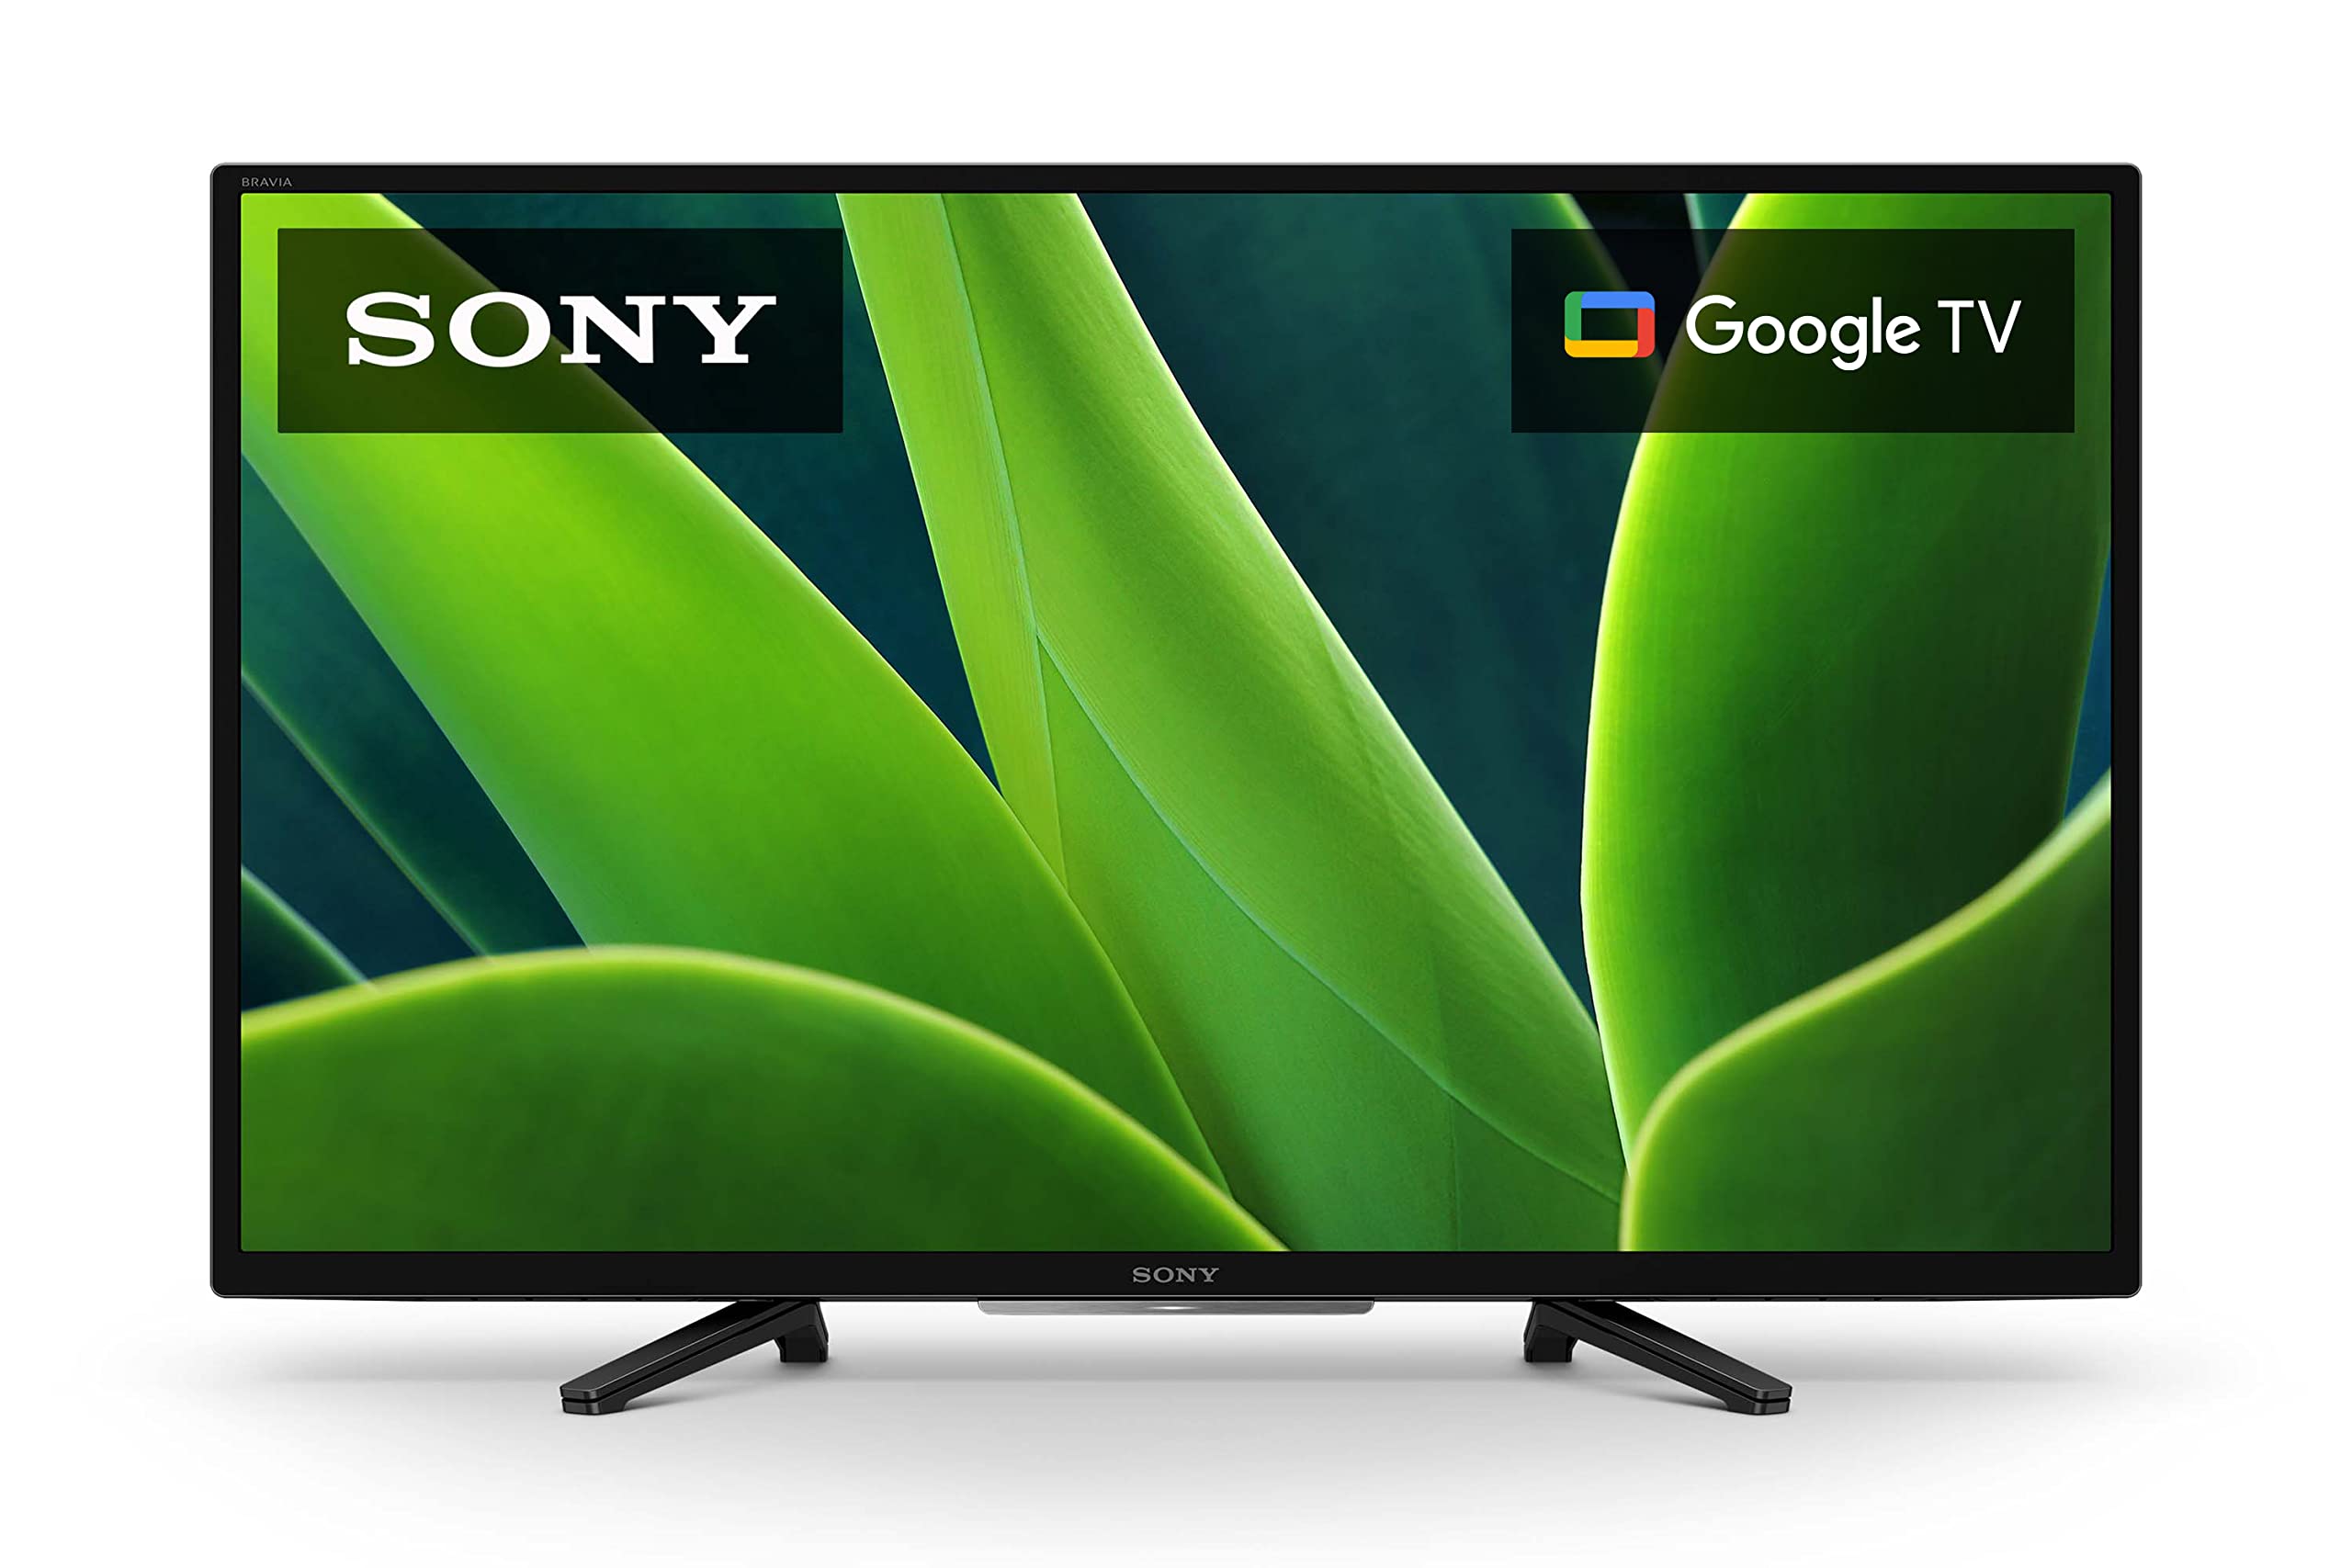 Sony Téléviseur HDR LED HD 32 pouces 720p série W830K avec Google TV et Google Assistant-modèle 2022